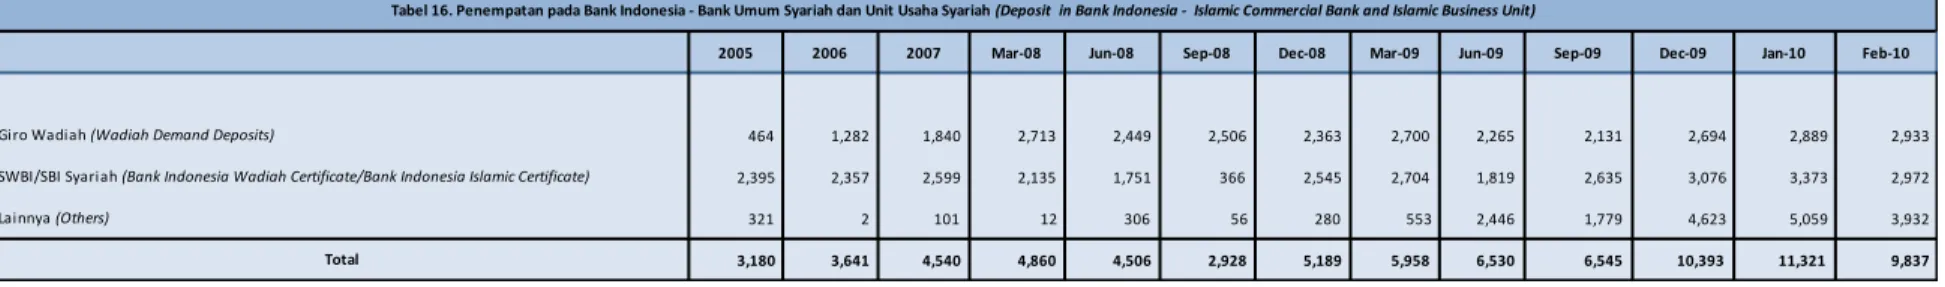 Tabel 16. Penempatan pada Bank Indonesia - Bank Umum Syariah dan Unit Usaha Syariah (Deposit  in Bank Indonesia -  Islamic Commercial Bank and Islamic Business Unit)